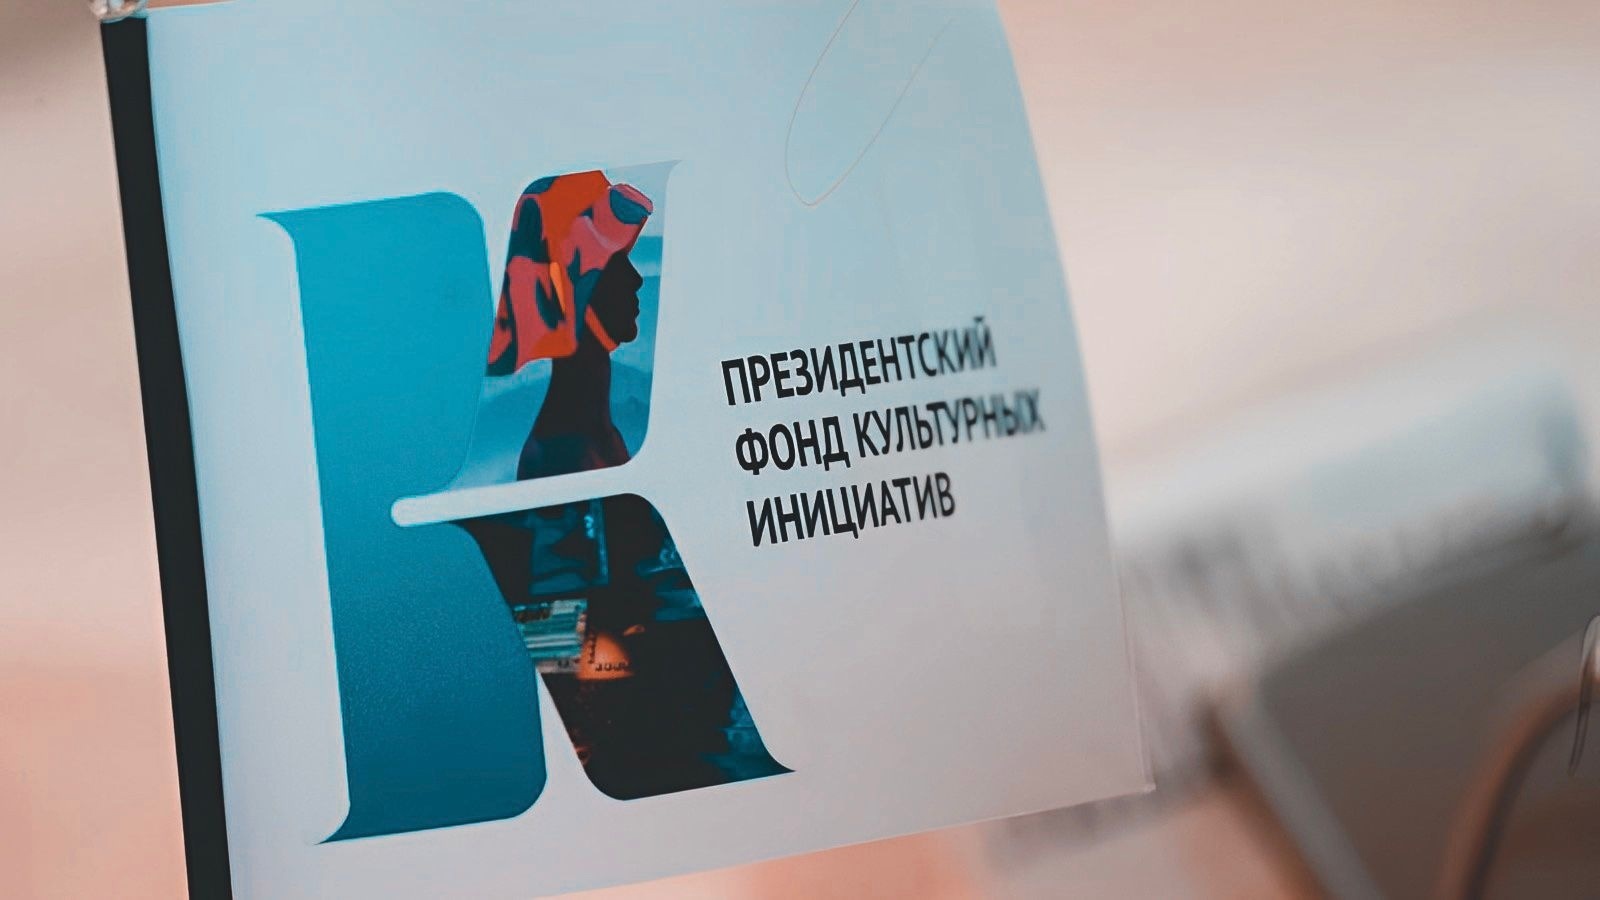 Документально-просветительский проект из Якутии выиграл грант фонда культурных инициатив